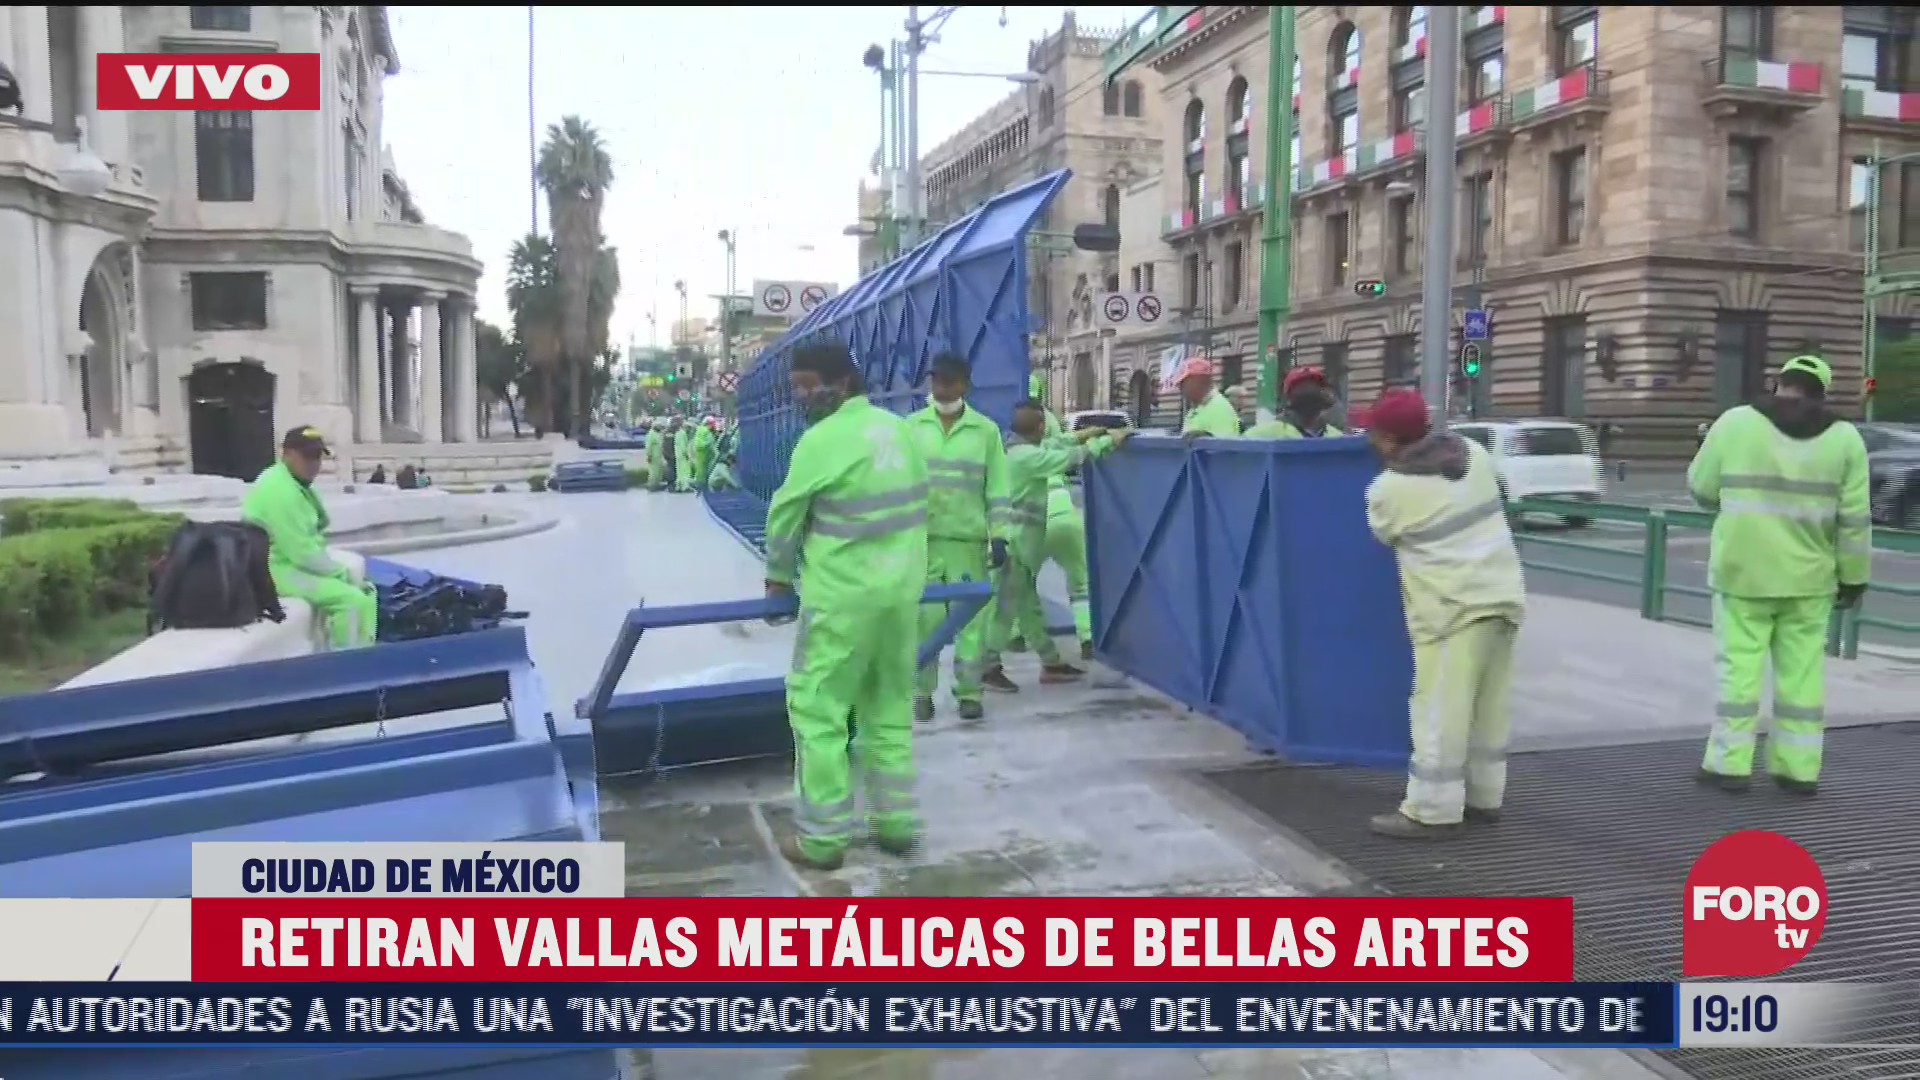 Autoridades de la Ciudad de México retiran vallas para contener a manifestantes en el palacio de bellas artes